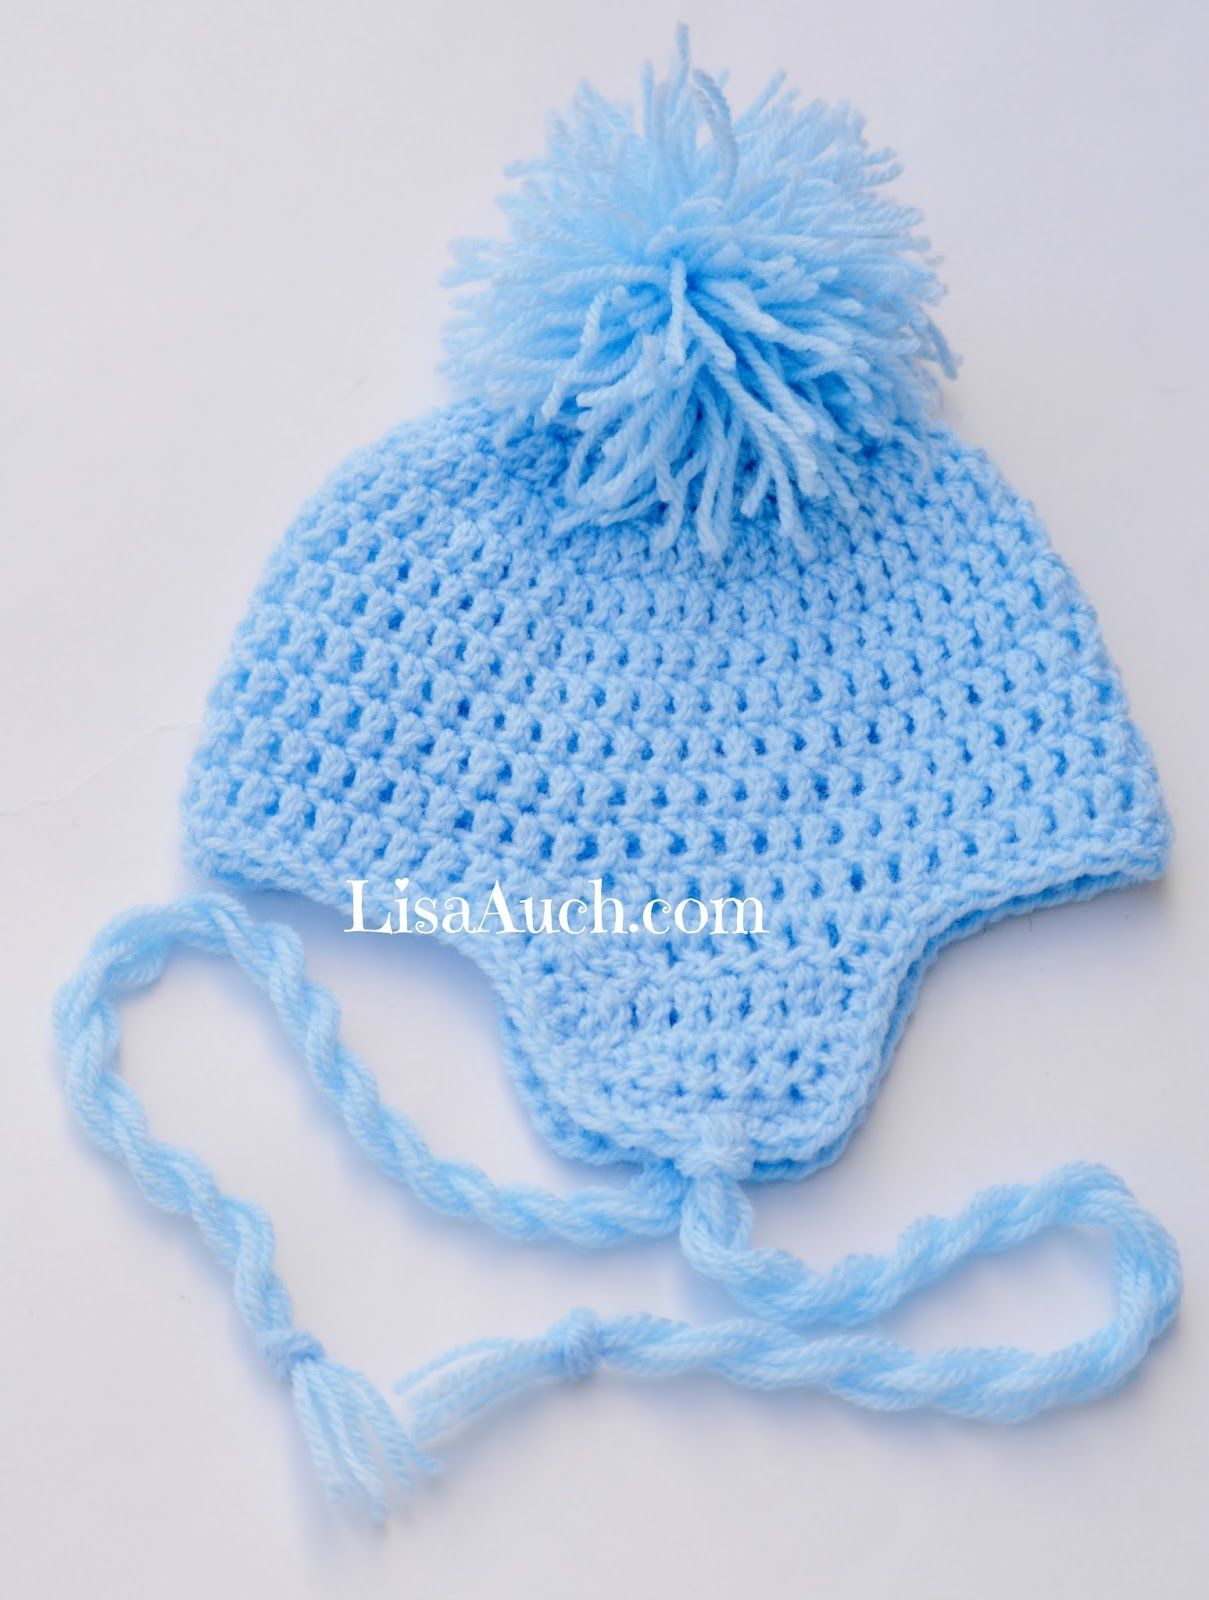 Baby Boy Crochet Hats Free Pattern Free Crochet Ba Hat Pattern With Earflaps Crochet Pinterest